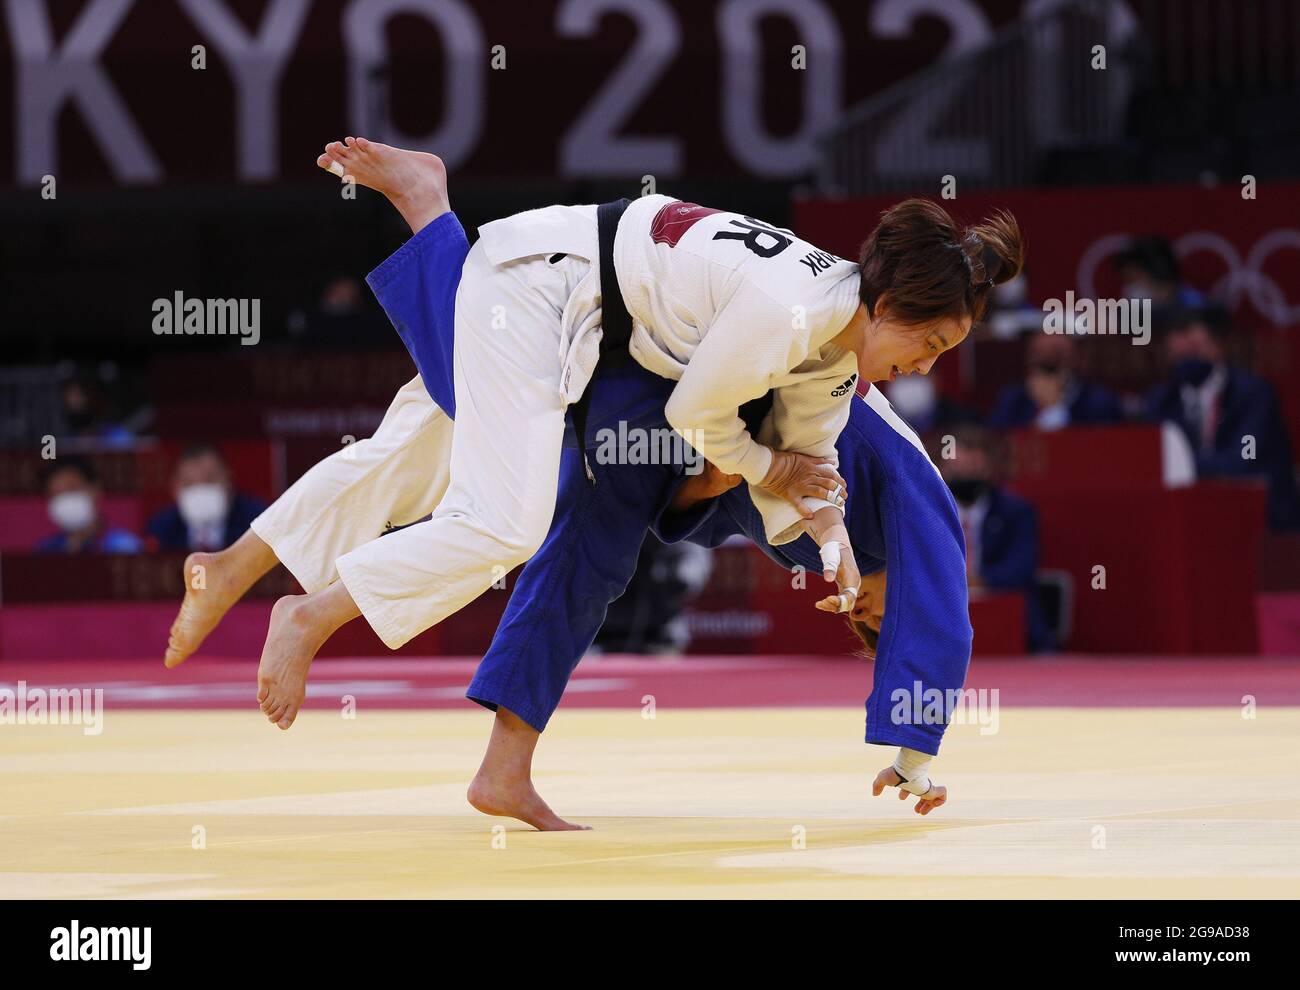 Il Korea's da-Sol Park (bianco) compete contro la Reka Pupp ungherese in una partita femminile di repachage Judo 52kg alle Olimpiadi estive di Tokyo, Giappone, domenica 25 luglio 2021. Foto di Bob strong/UPI. Foto Stock